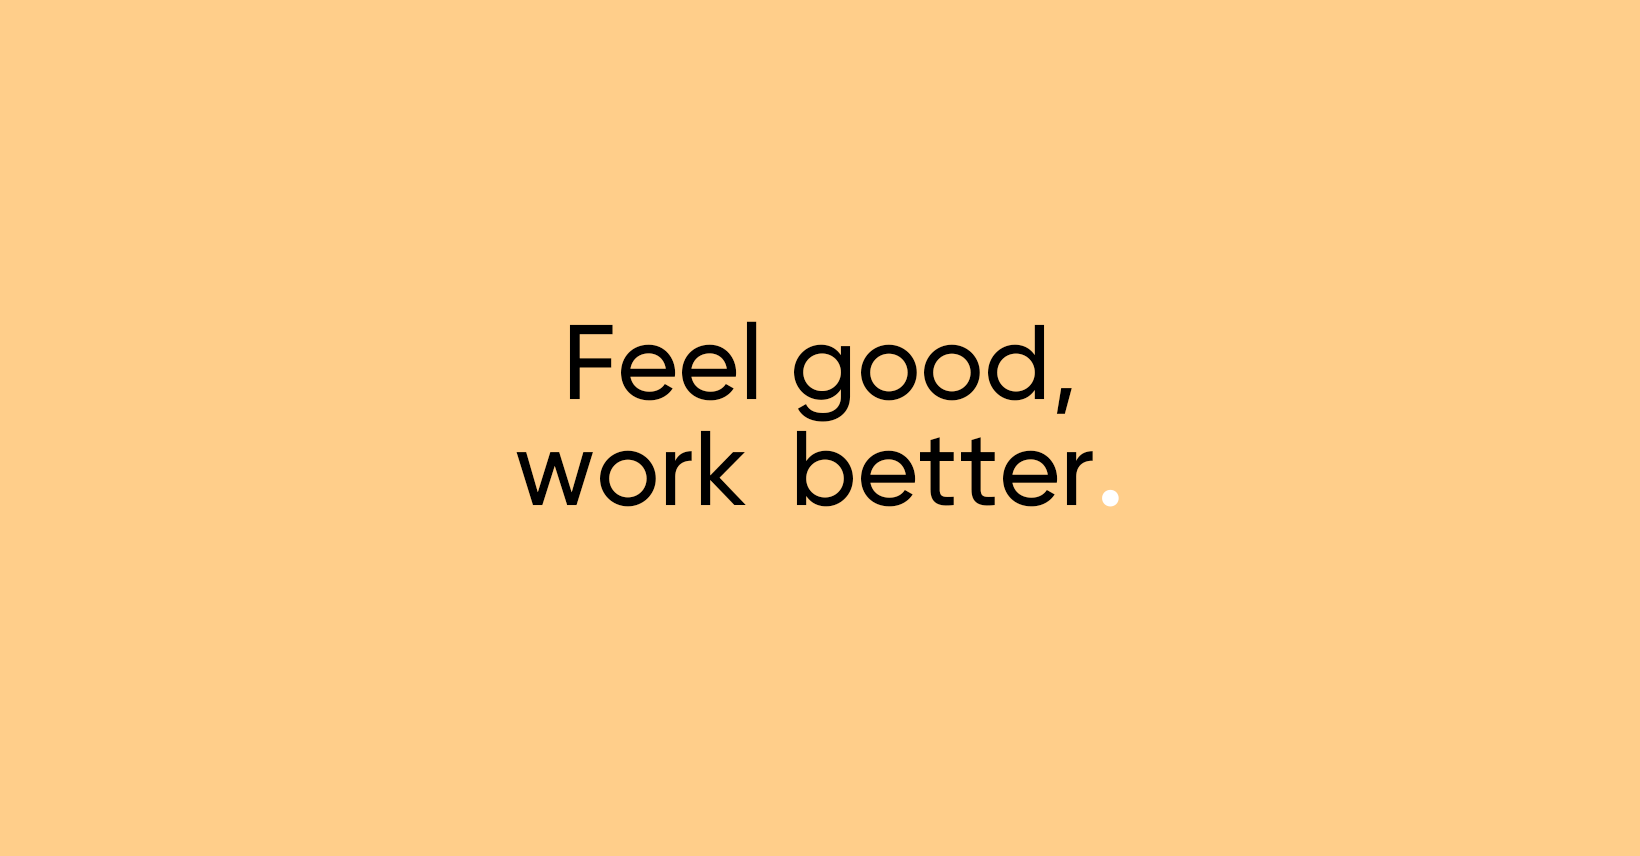 Feel good, work better